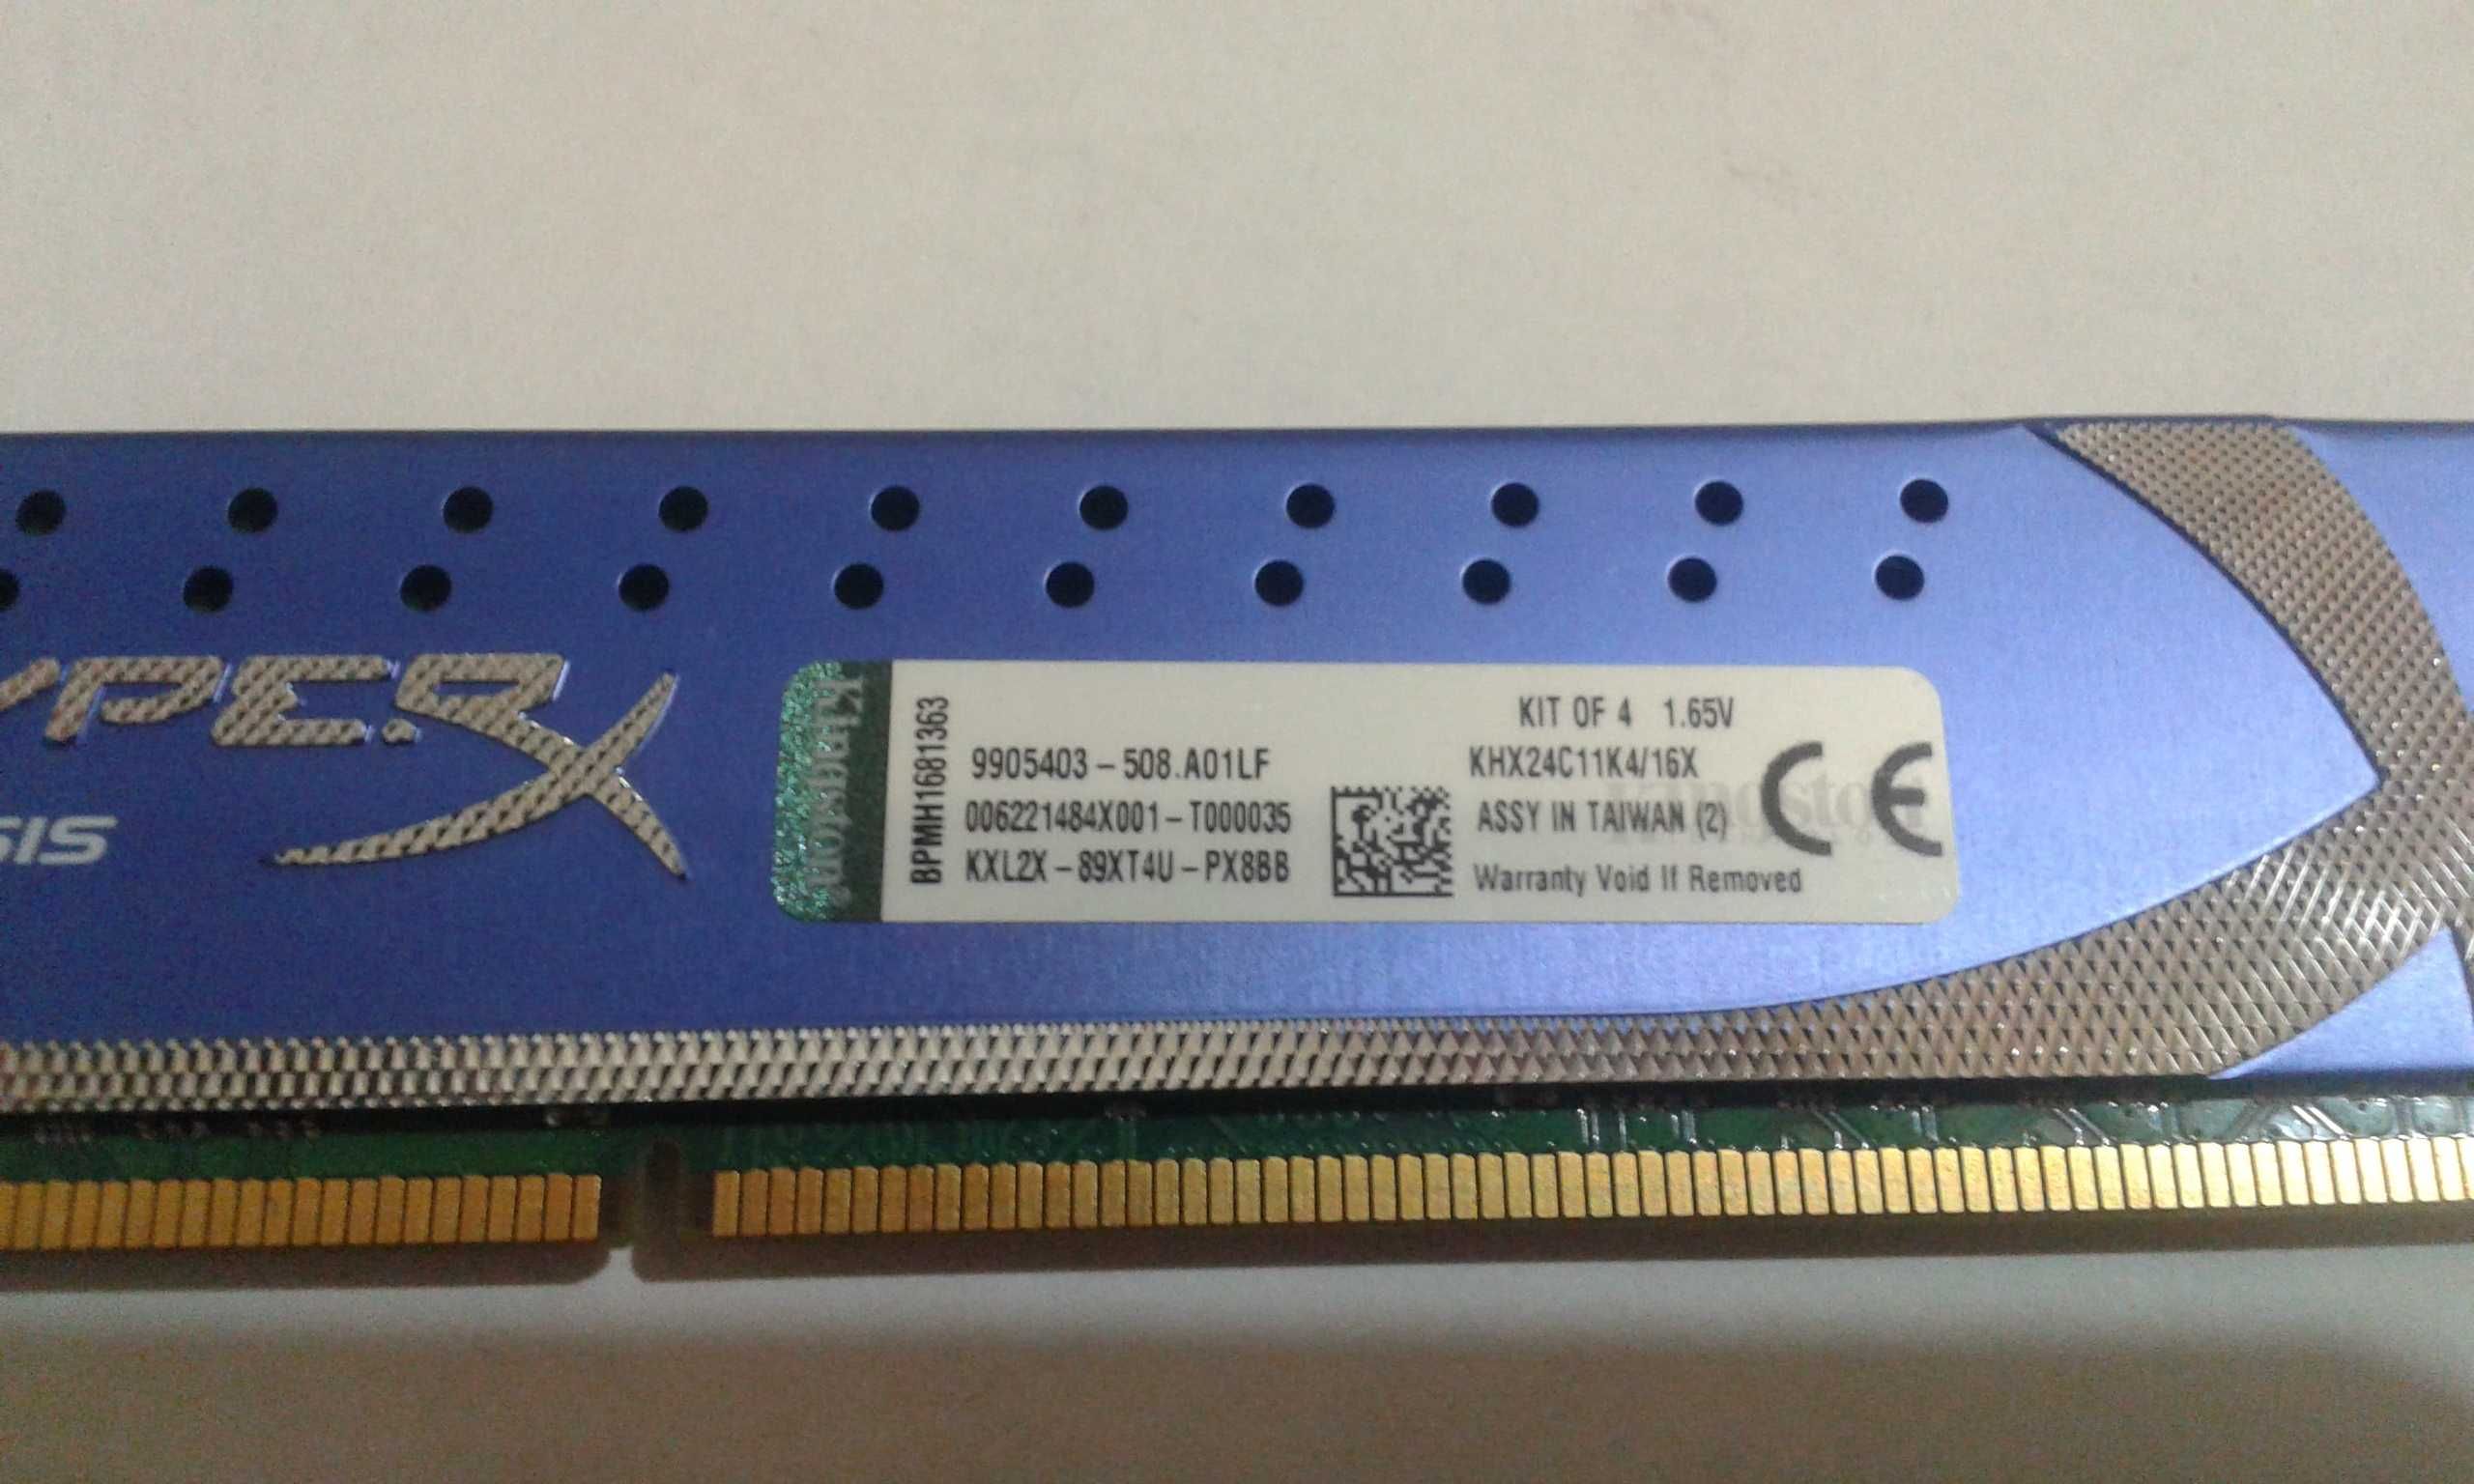 Продам ОЗУ Kingston KHX24C11K416X  16GB (4x4GB) DDR3